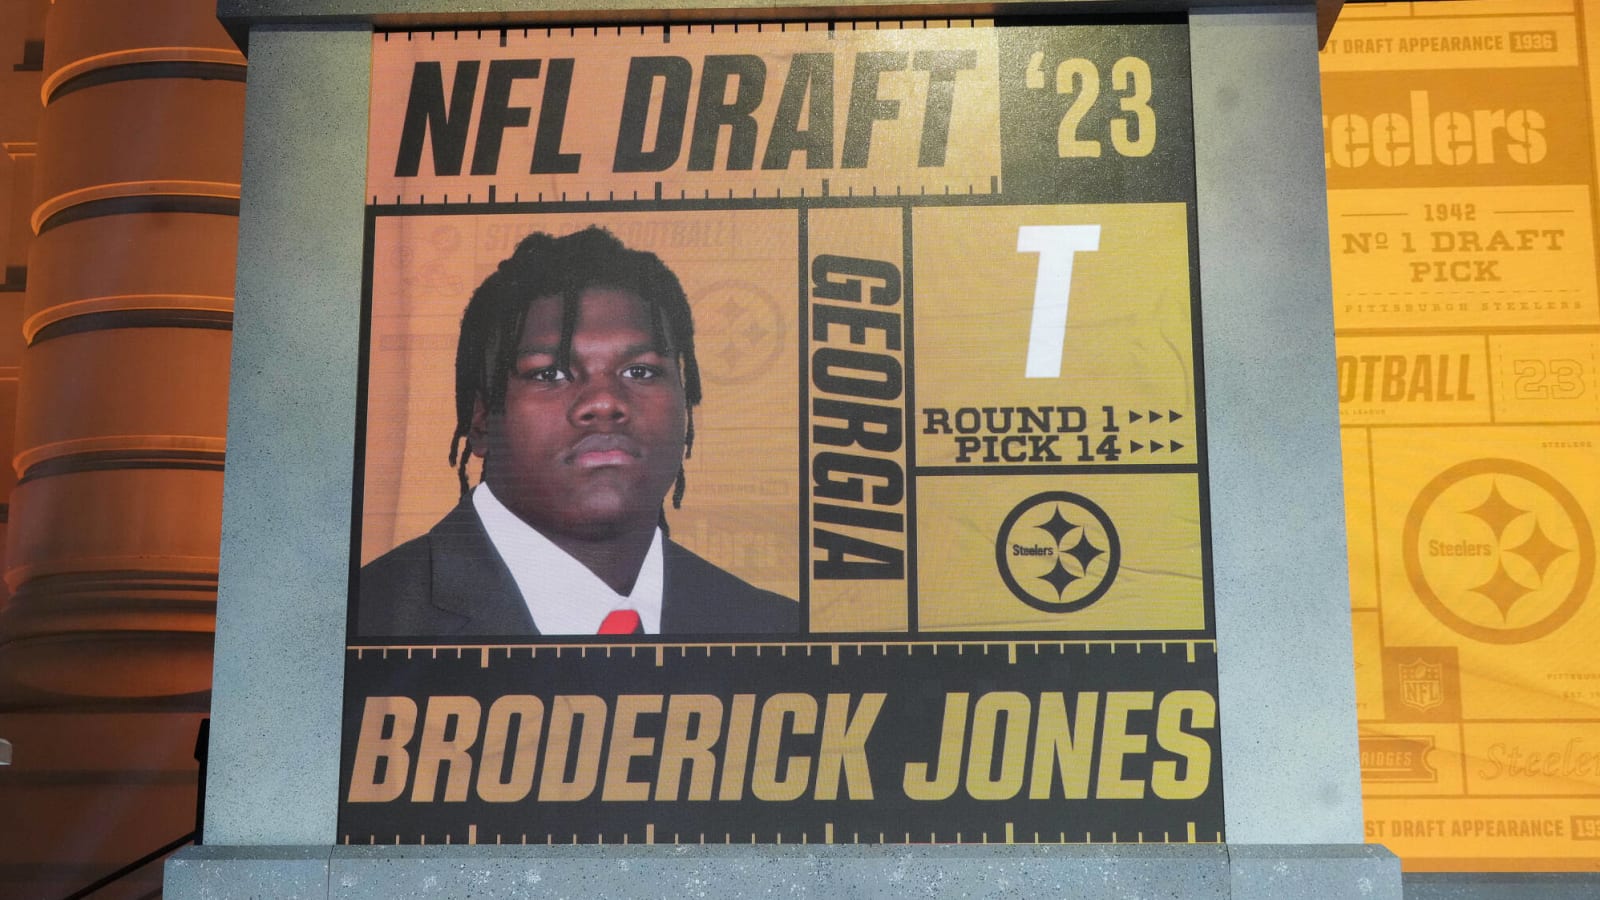 Twitter Reaction to Steelers Landing Broderick Jones